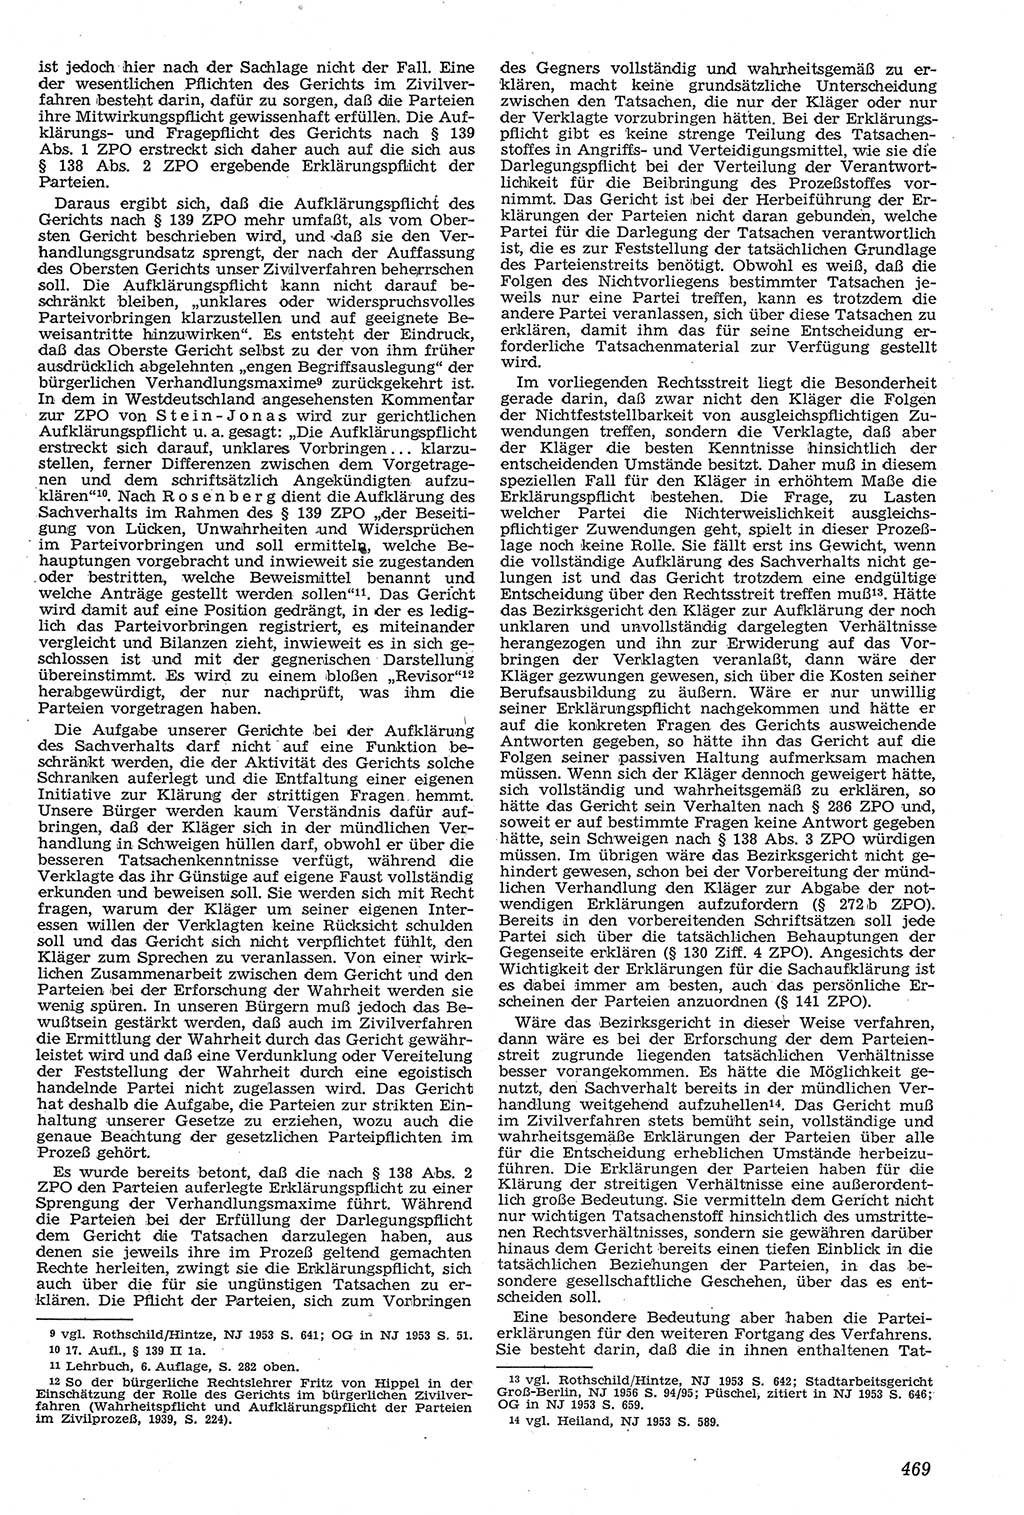 Neue Justiz (NJ), Zeitschrift für Recht und Rechtswissenschaft [Deutsche Demokratische Republik (DDR)], 11. Jahrgang 1957, Seite 469 (NJ DDR 1957, S. 469)